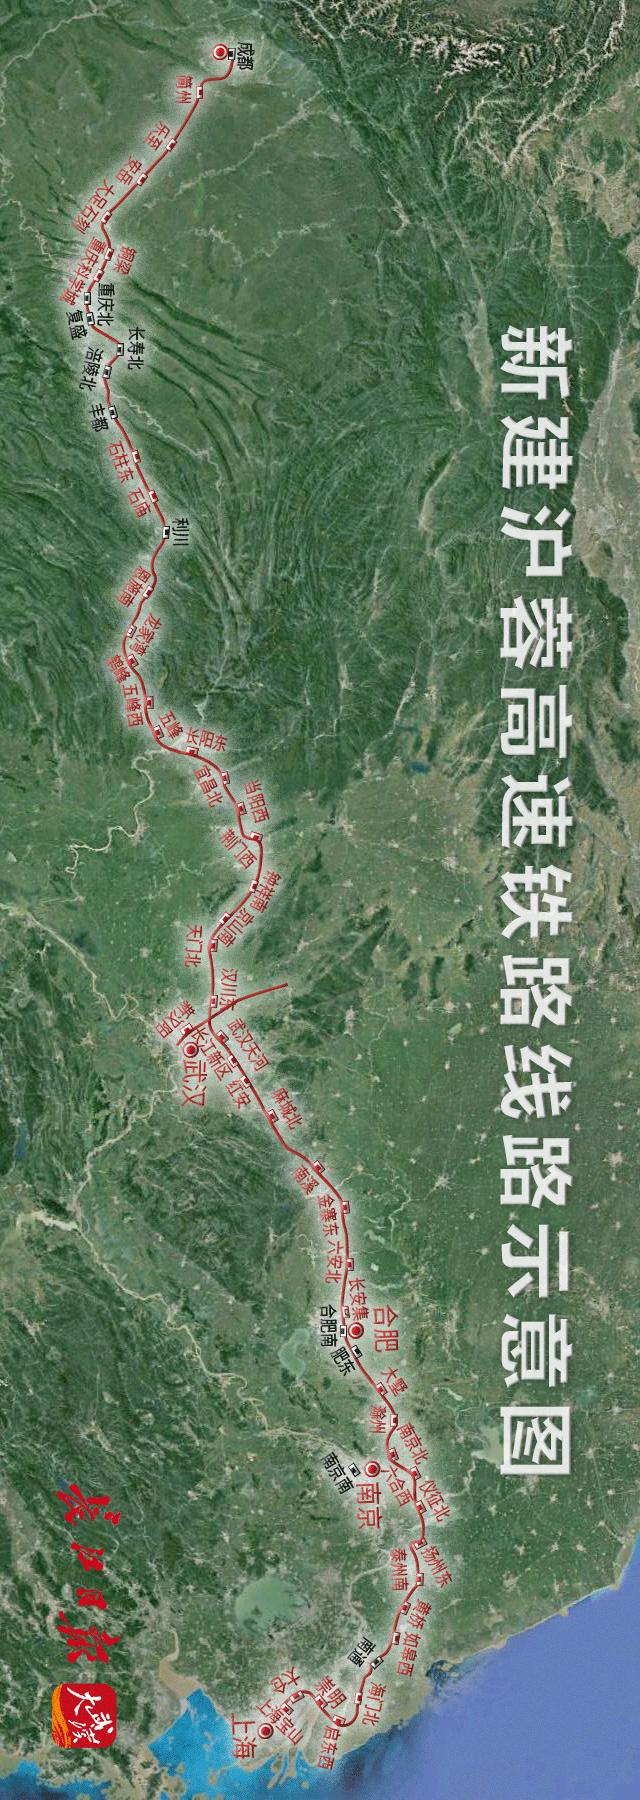 湖北省疫后重振补短板的重大铁路项目之一的武汉至宜昌段先期开工建设